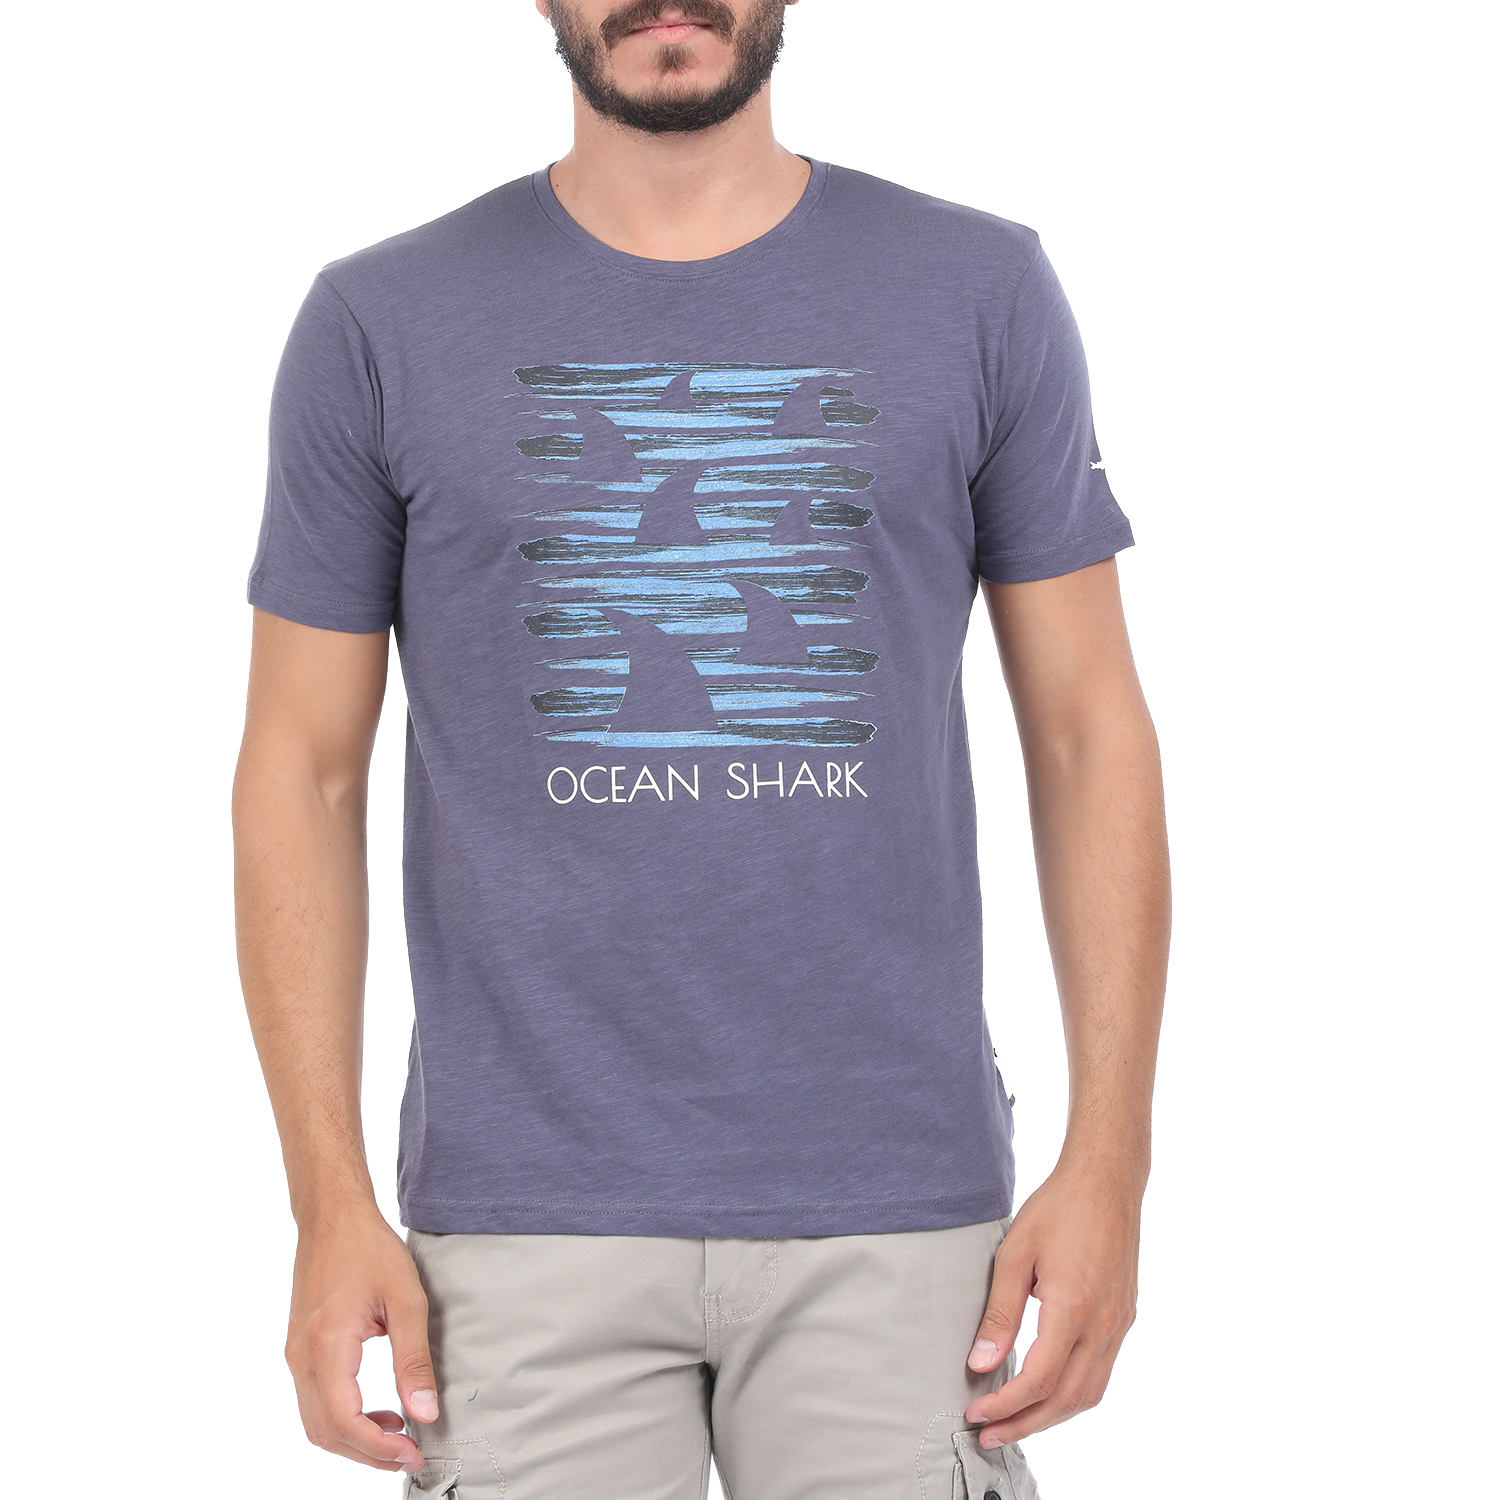 Ανδρικά/Ρούχα/Μπλούζες/Κοντομάνικες OCEAN SHARK - Ανδρική μπλούζα OCEAN SHARK OS SLUB102 γκρι